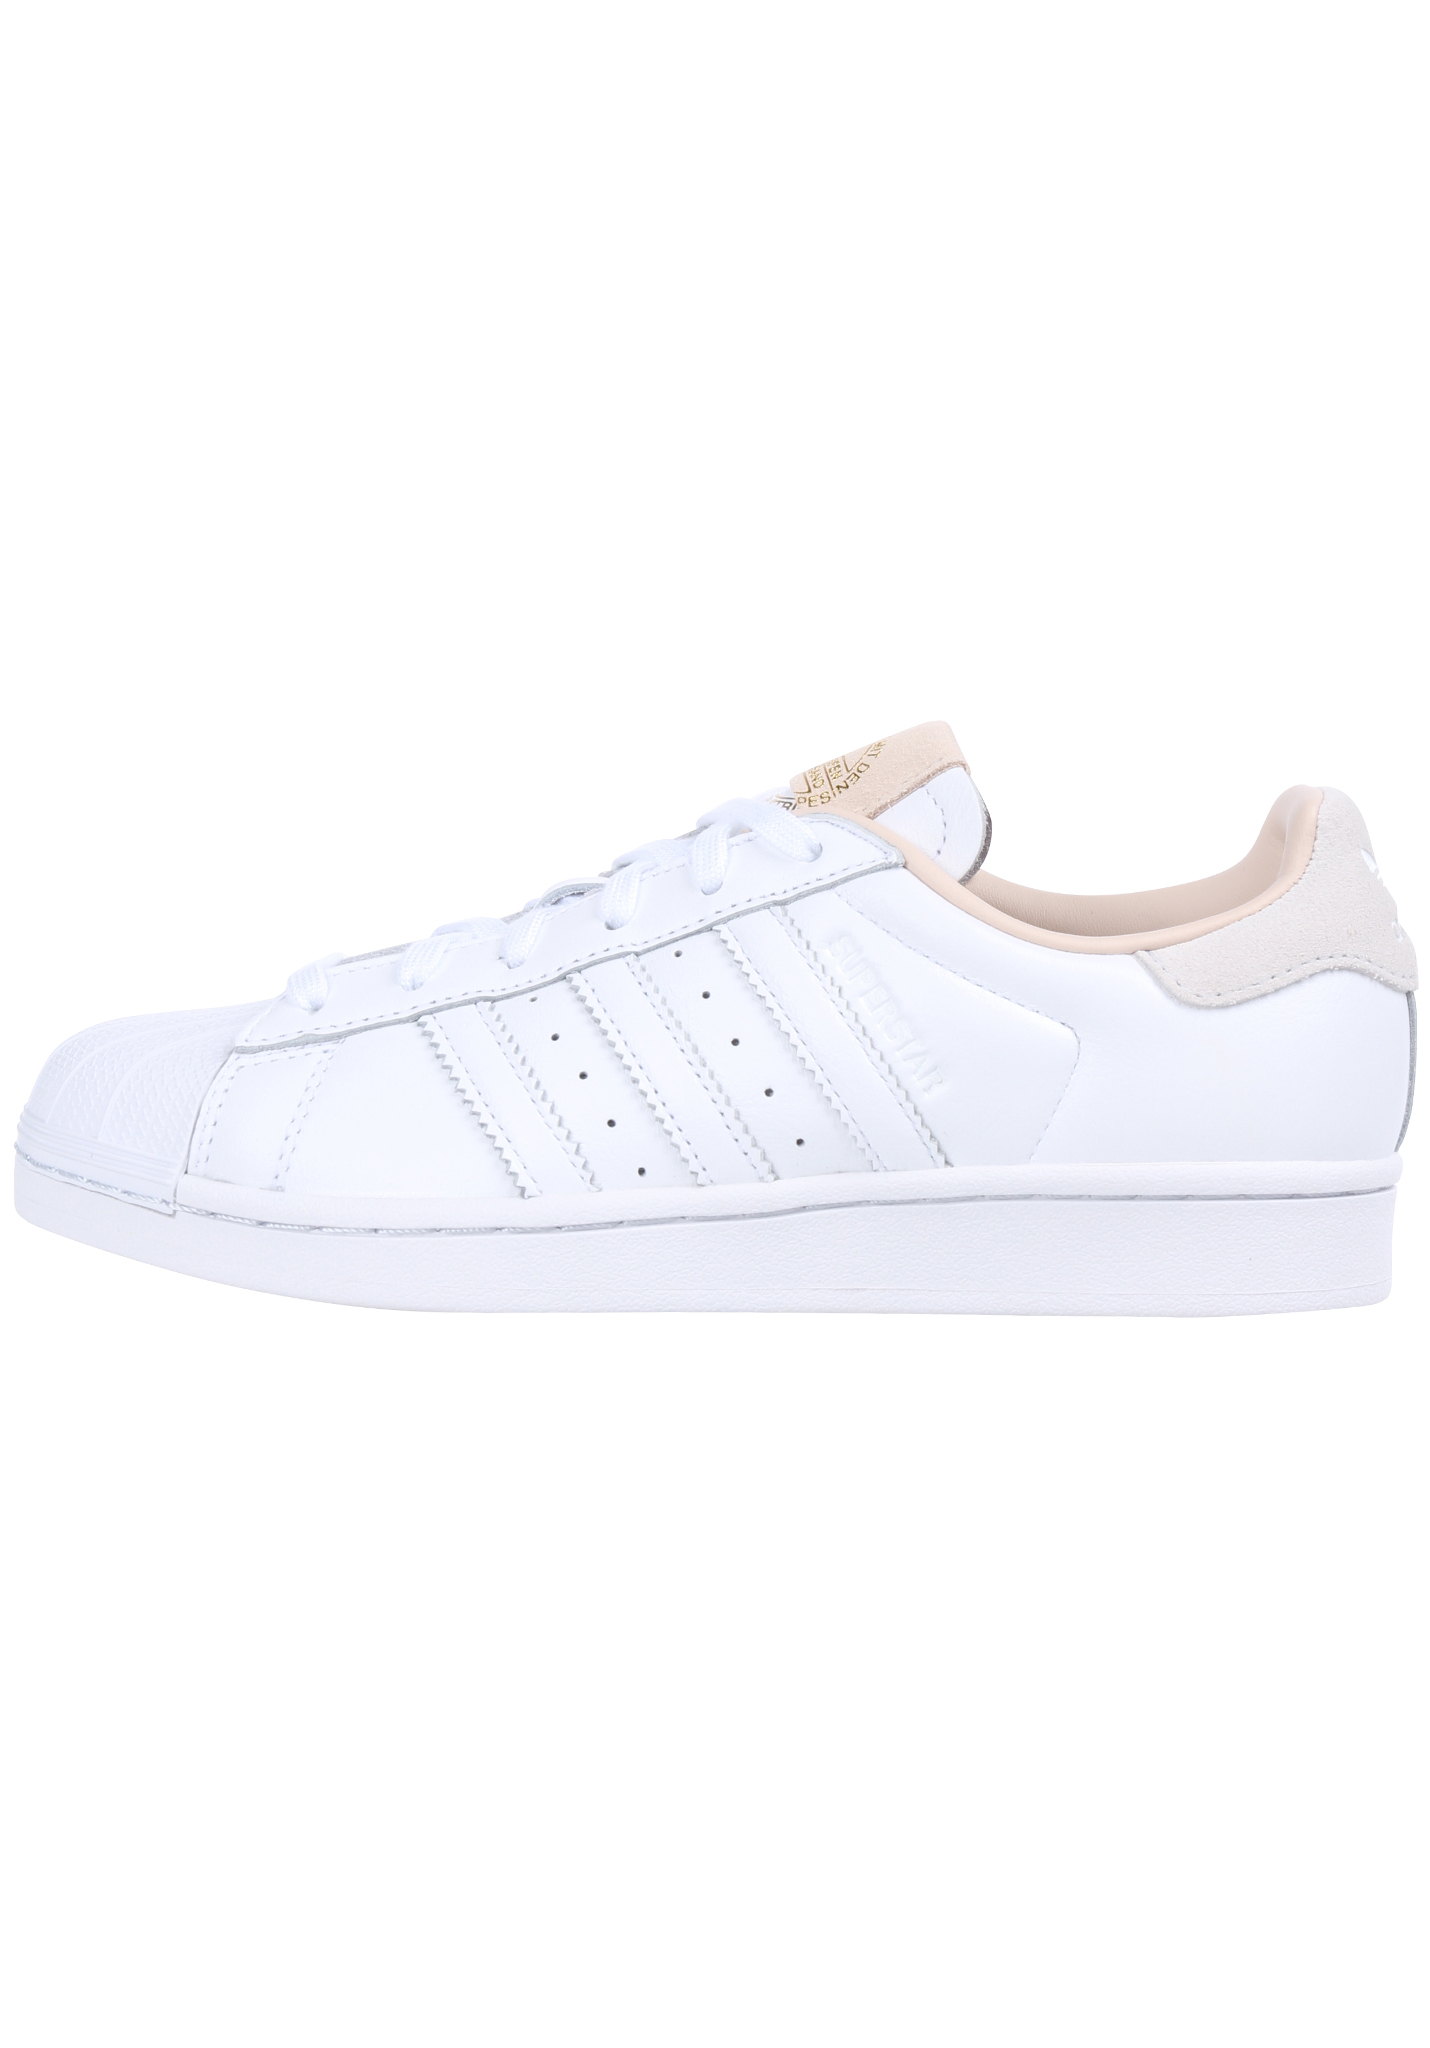 Adidas Originals Superstar Sneaker white 47 1/3